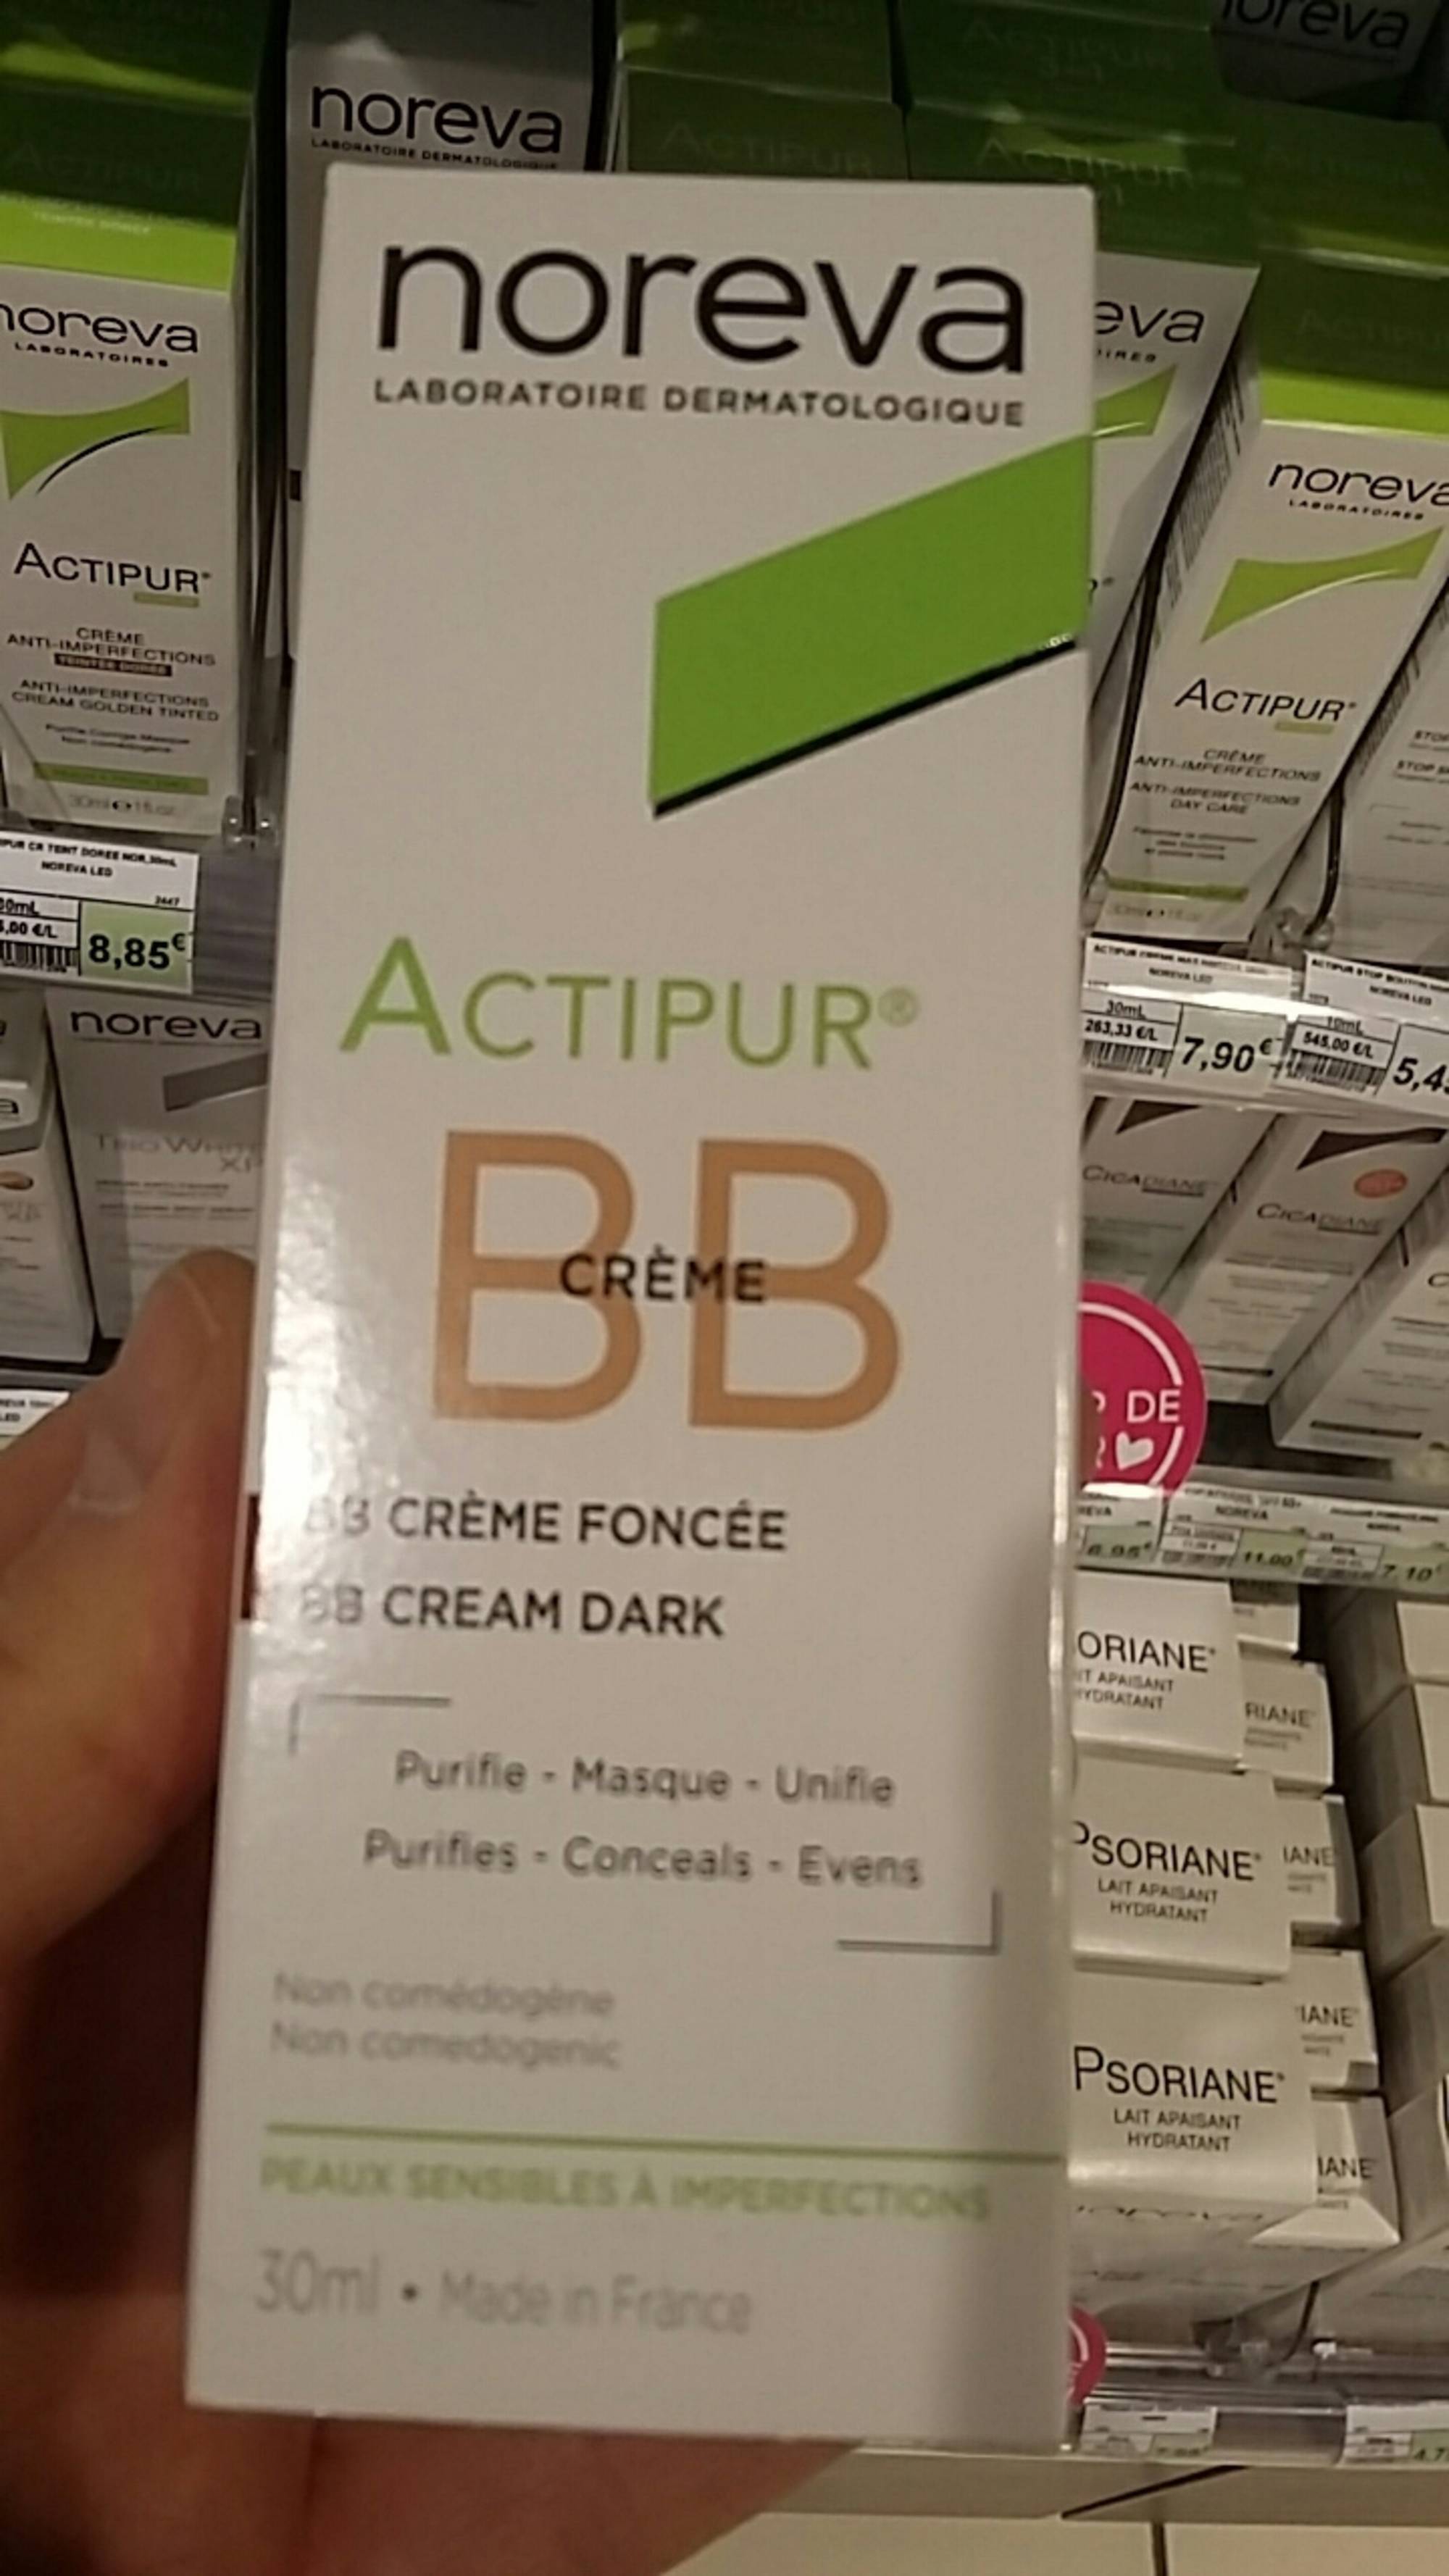 NOREVA - Actipur - BB crème foncée